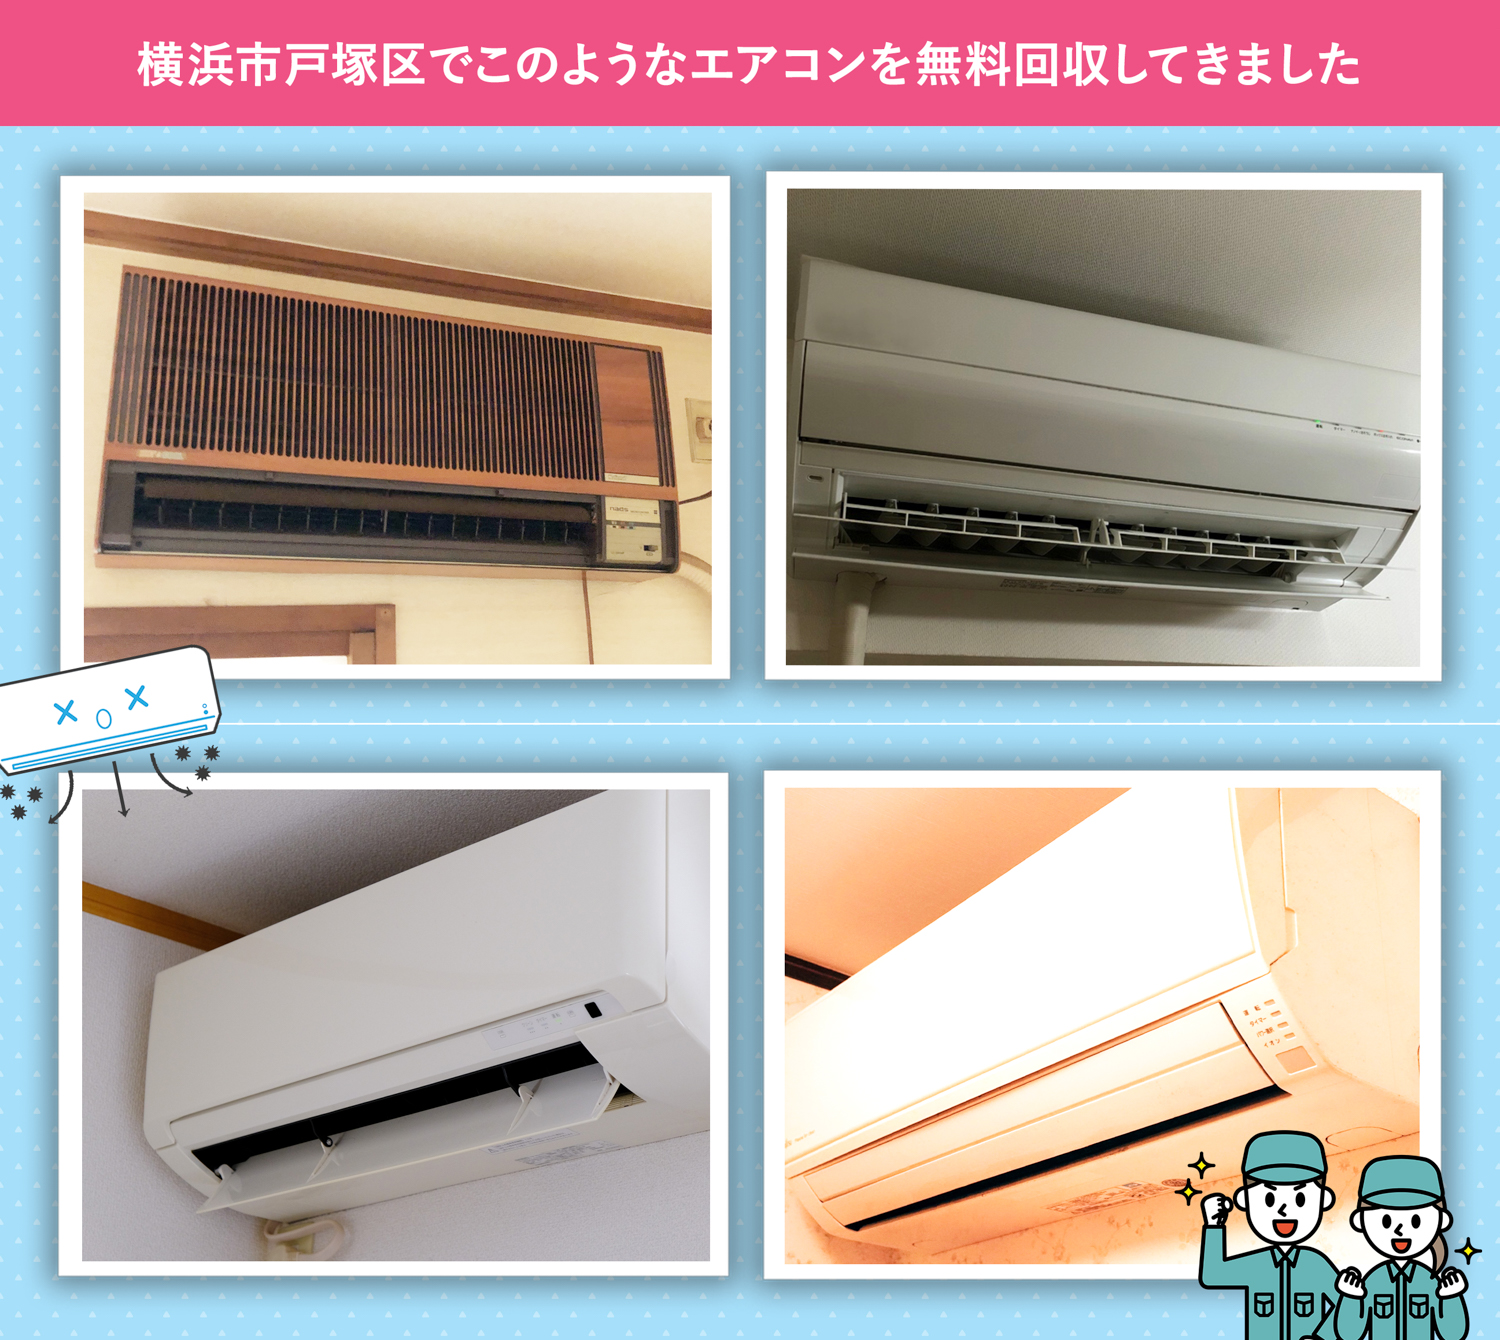 横浜市戸塚区でこのようなエアコンを無料回収してきました。